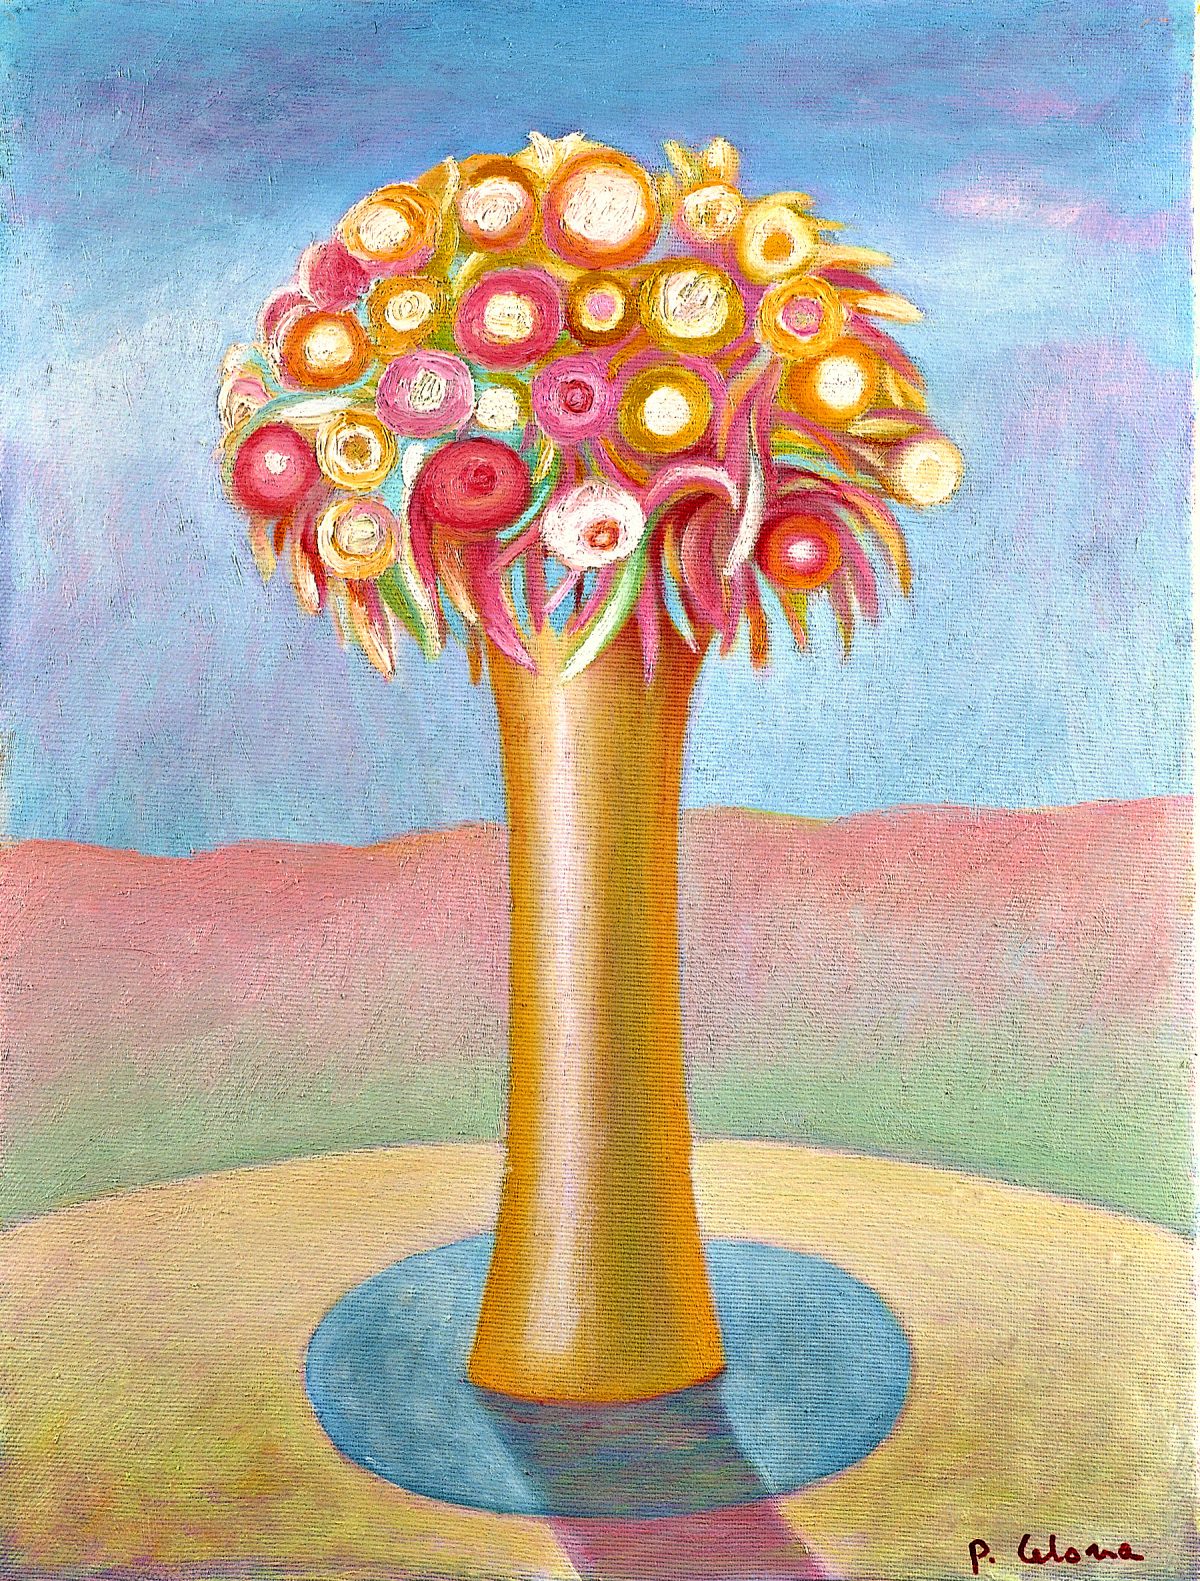 Vaso e fiori, ca. 1995
Olio su tela, 60 x 50 cm,
Collezione privata,
NMV115